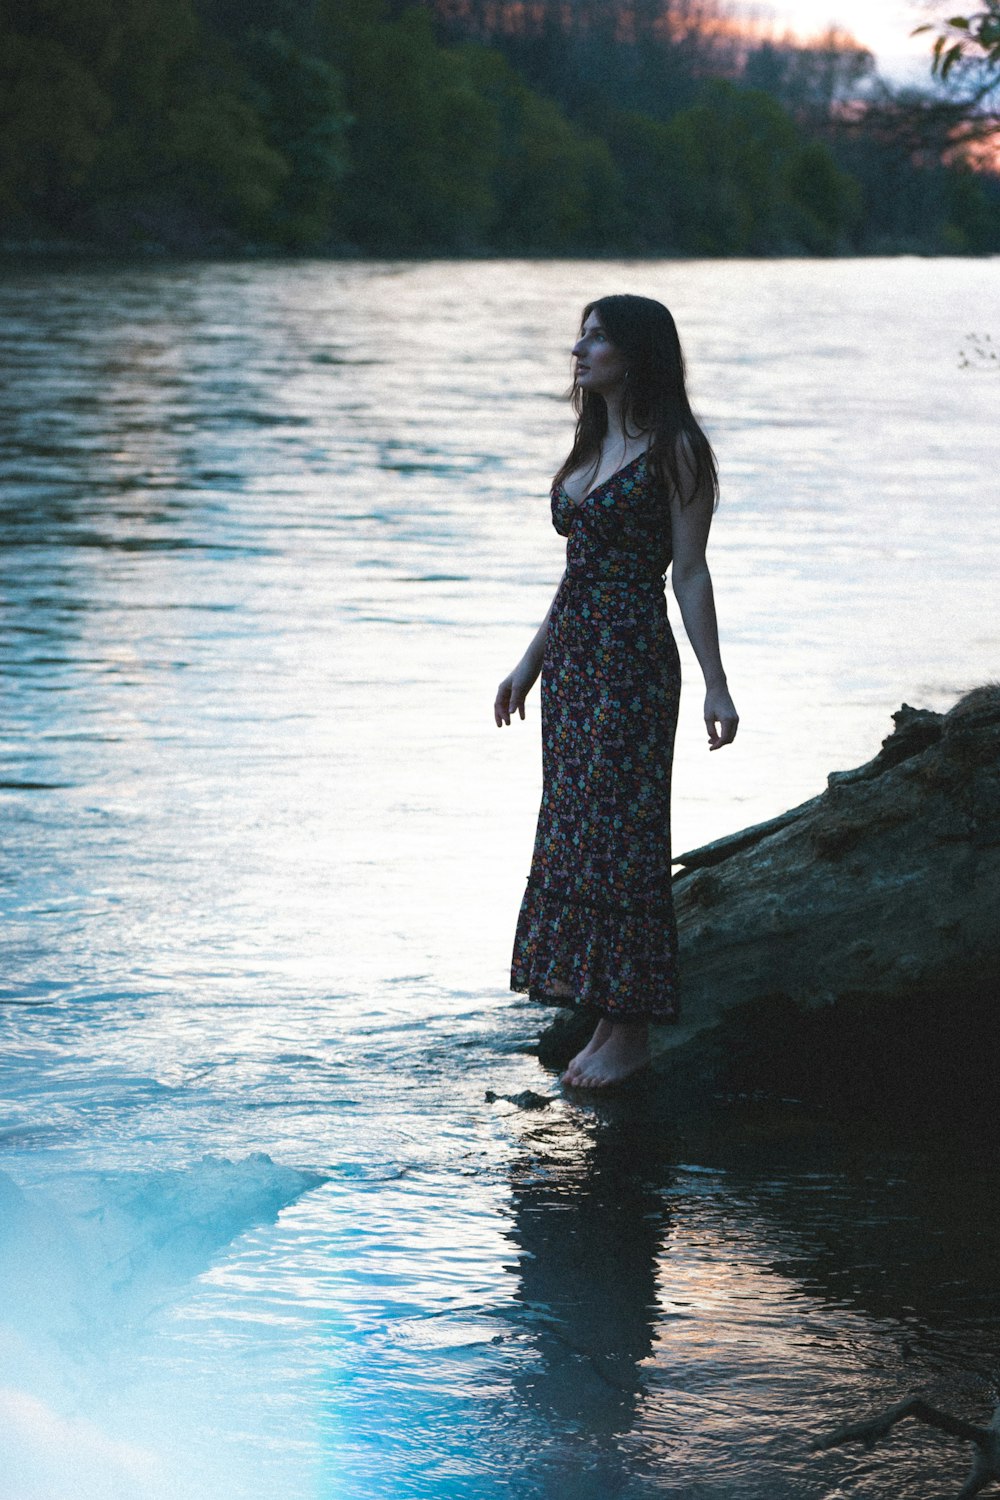 Frau in schwarzem Kleid, die tagsüber auf einem Felsen in der Nähe eines Gewässers steht